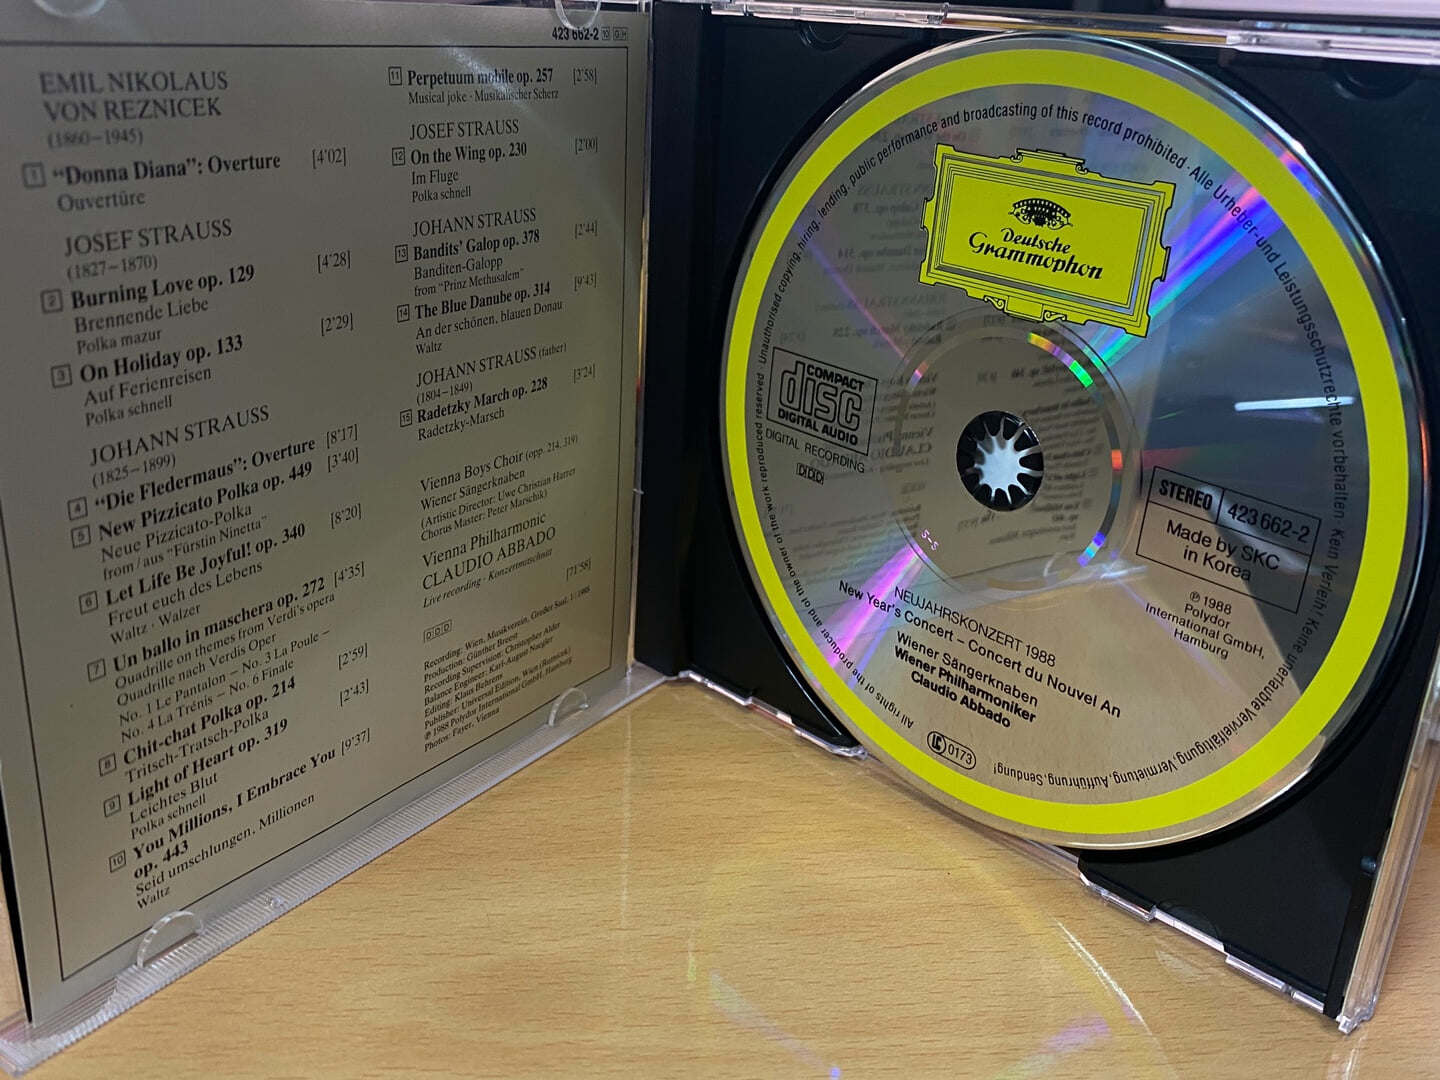 클라우디오 아바도 - Claudio Abbado - Neujahrskonzert 1988 [독일발매]